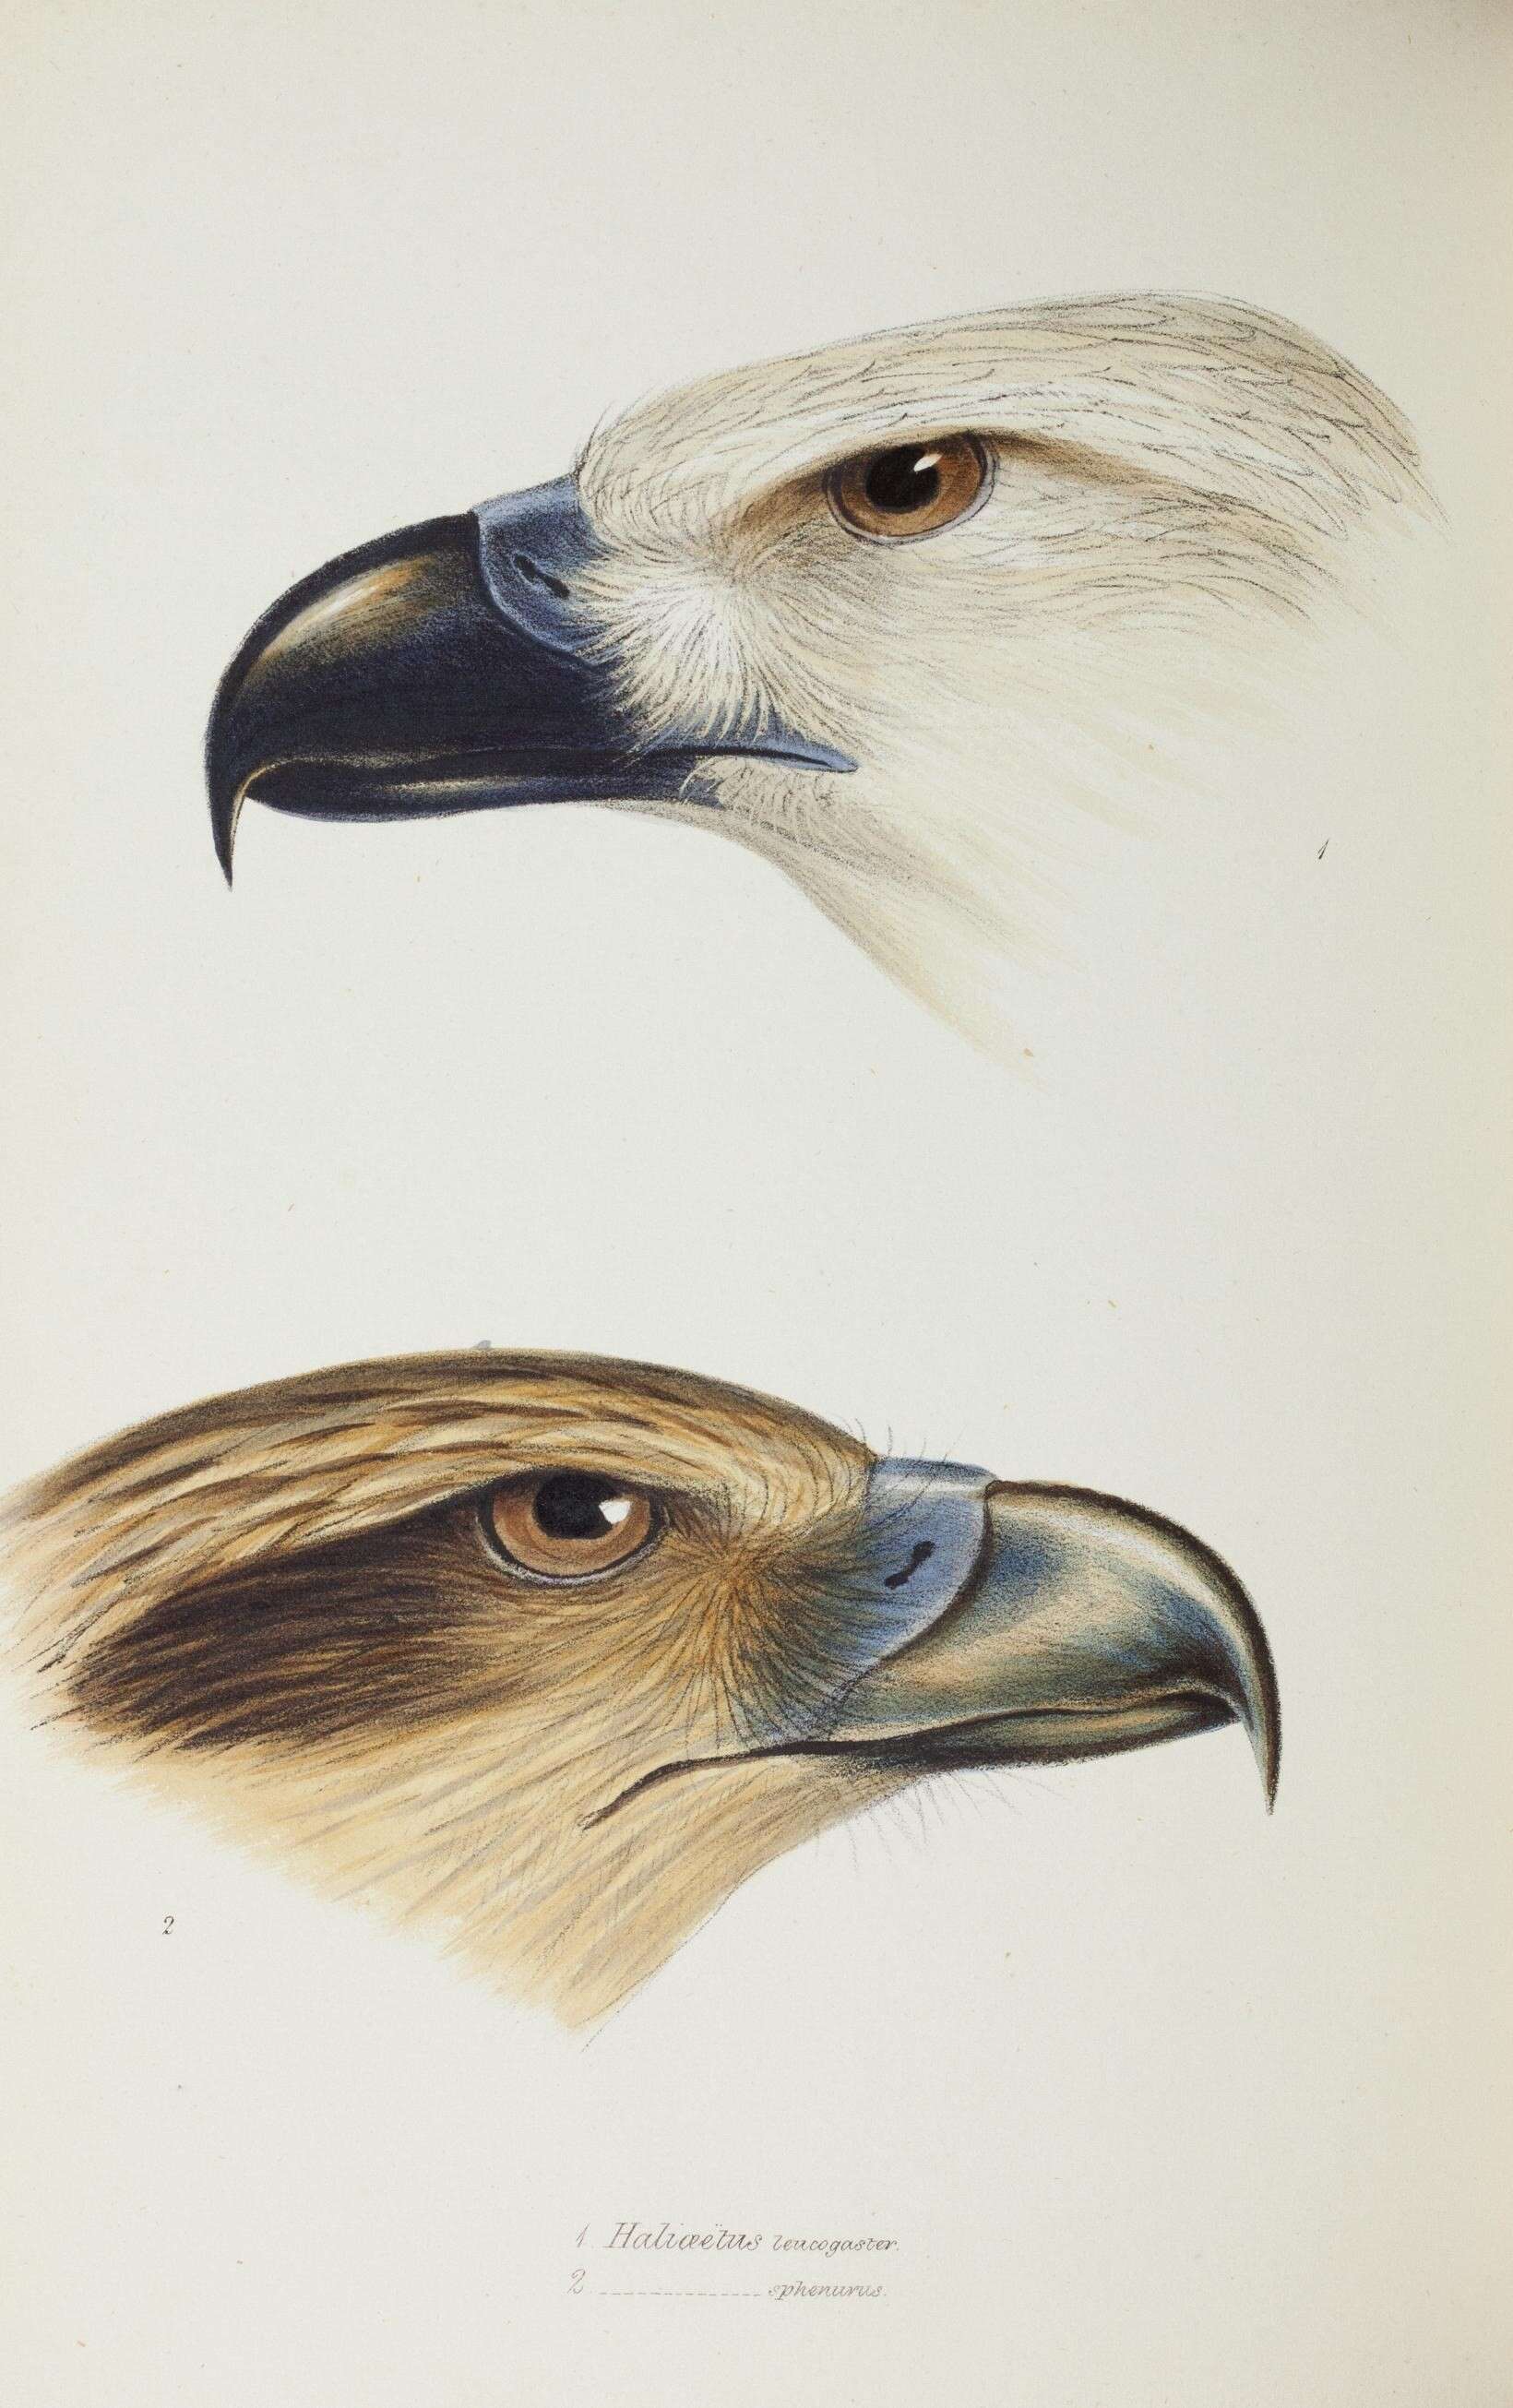 Image of Sea eagles